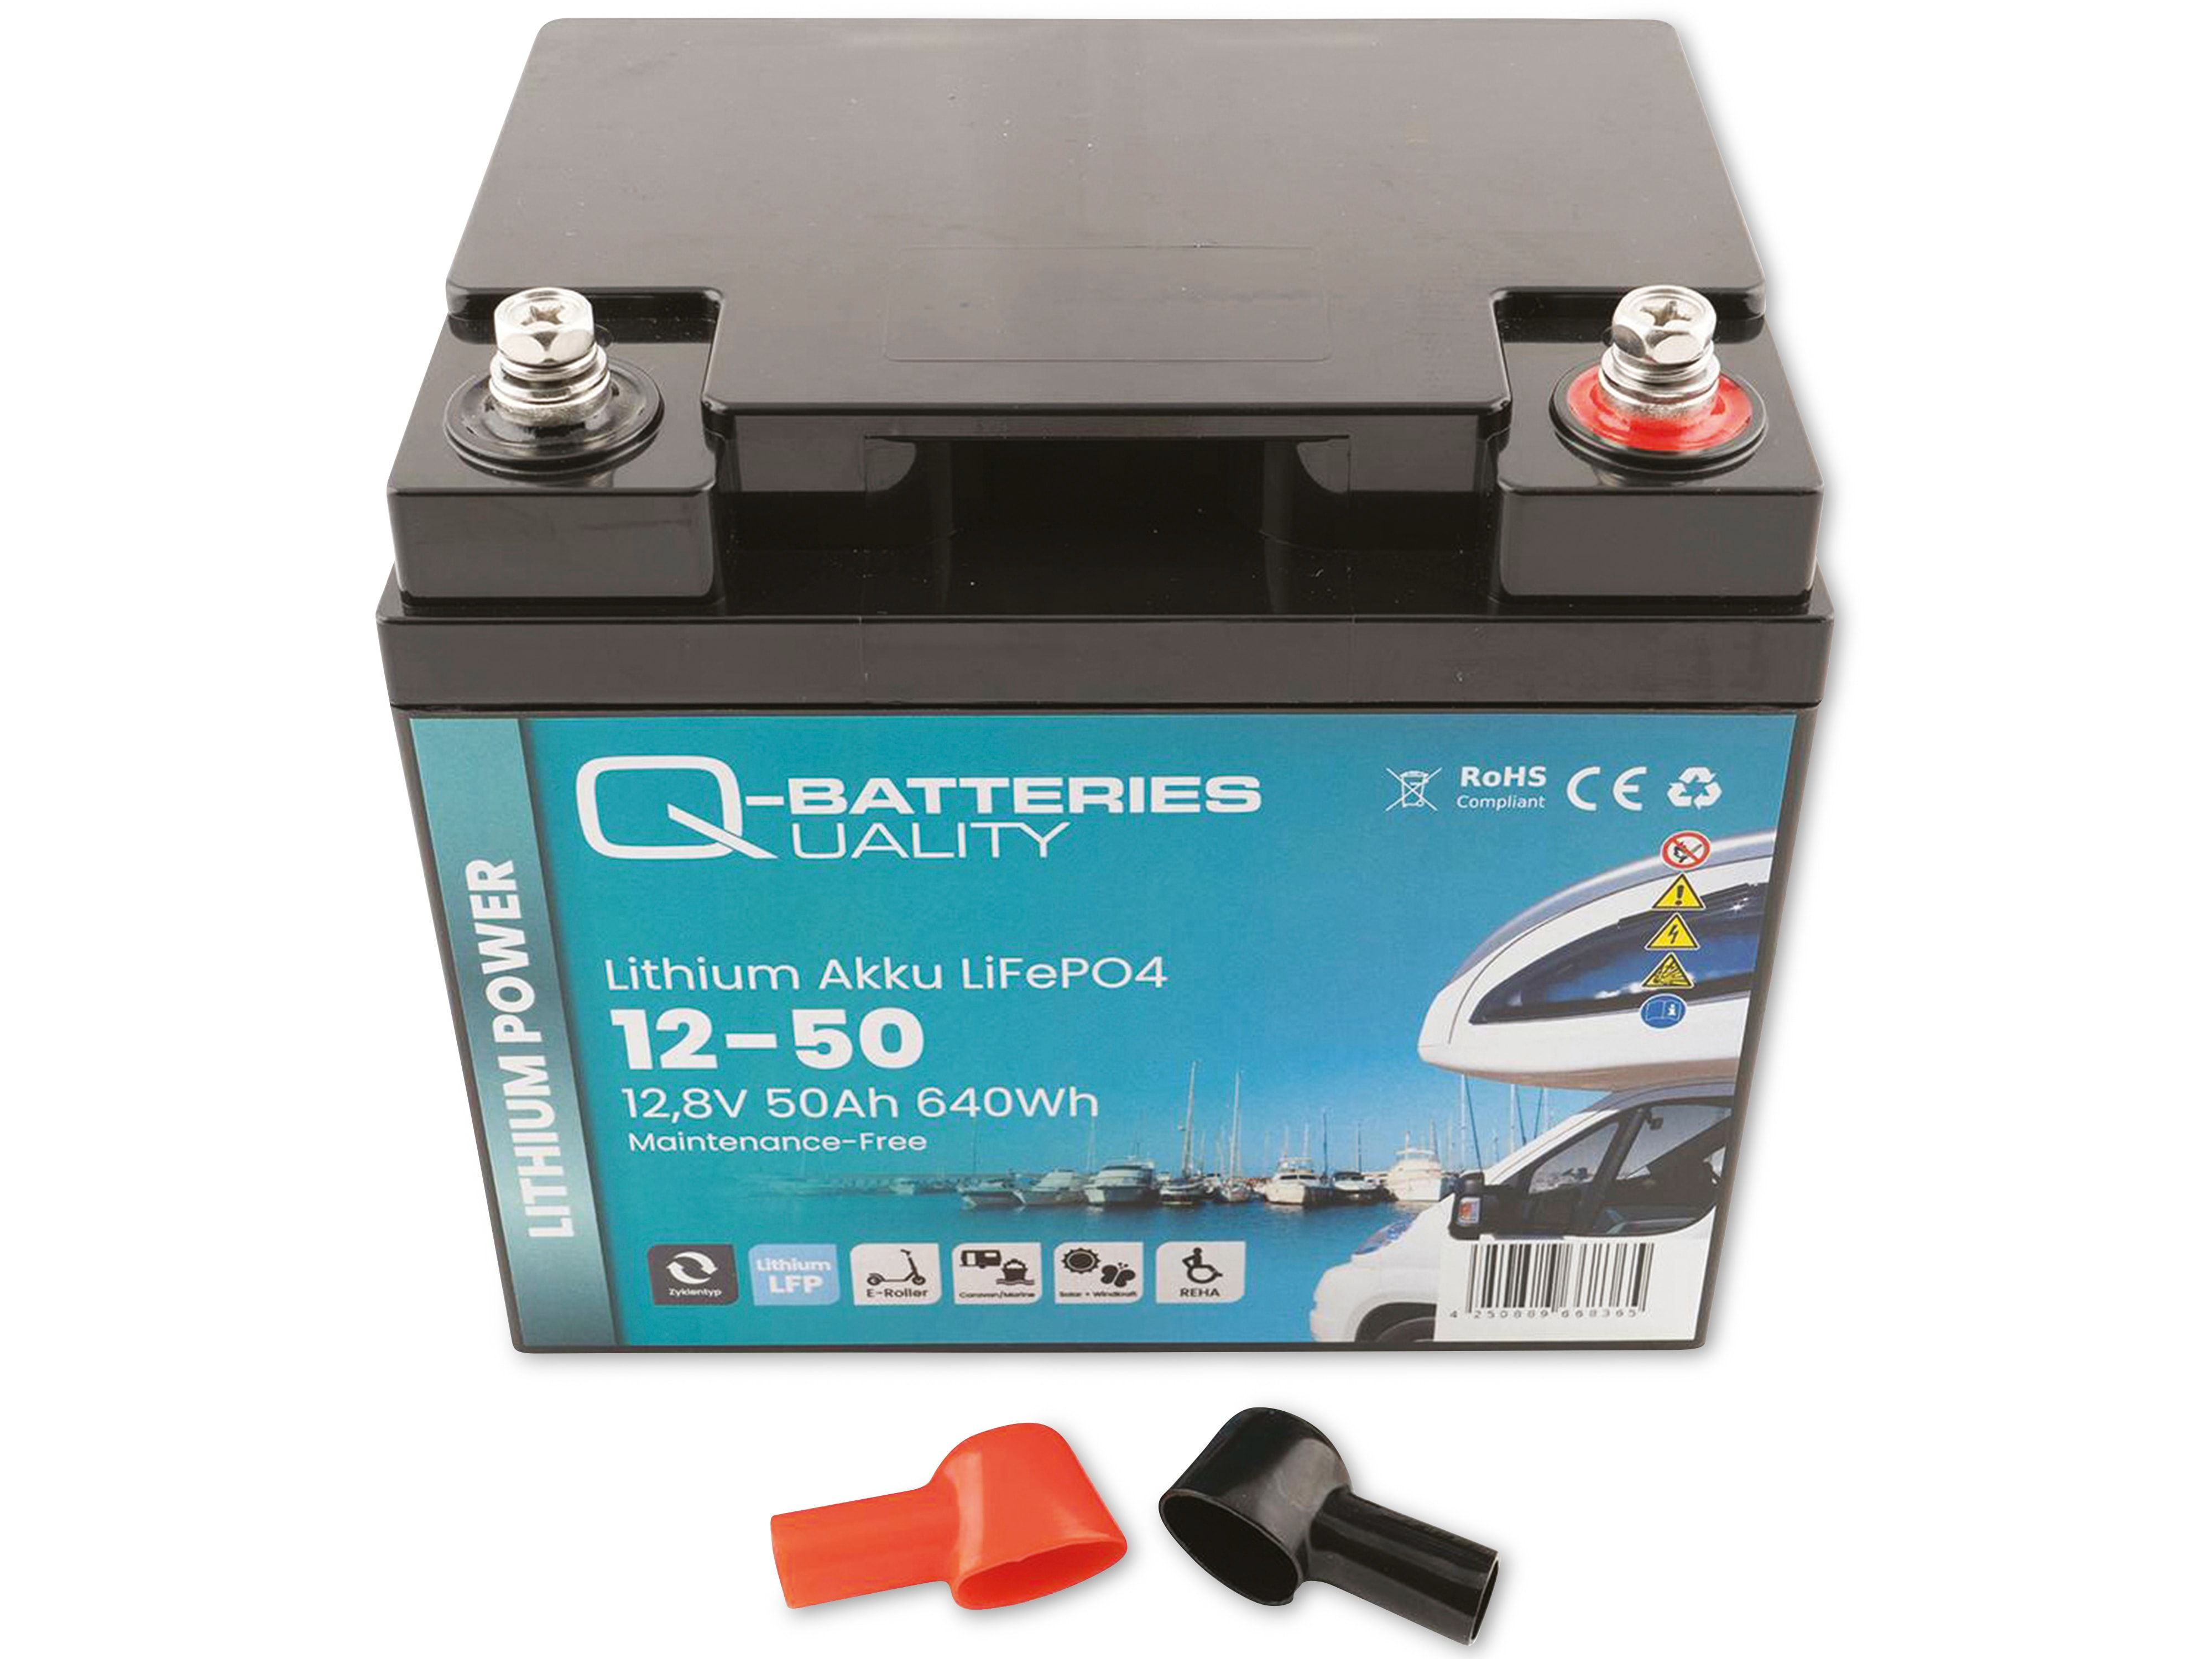 Q-BATTERIES Lithium Akku 12-50 12,8V, Batterie Akku 50Ah Lithium-Eisenphosphat LiFePO4 640Wh